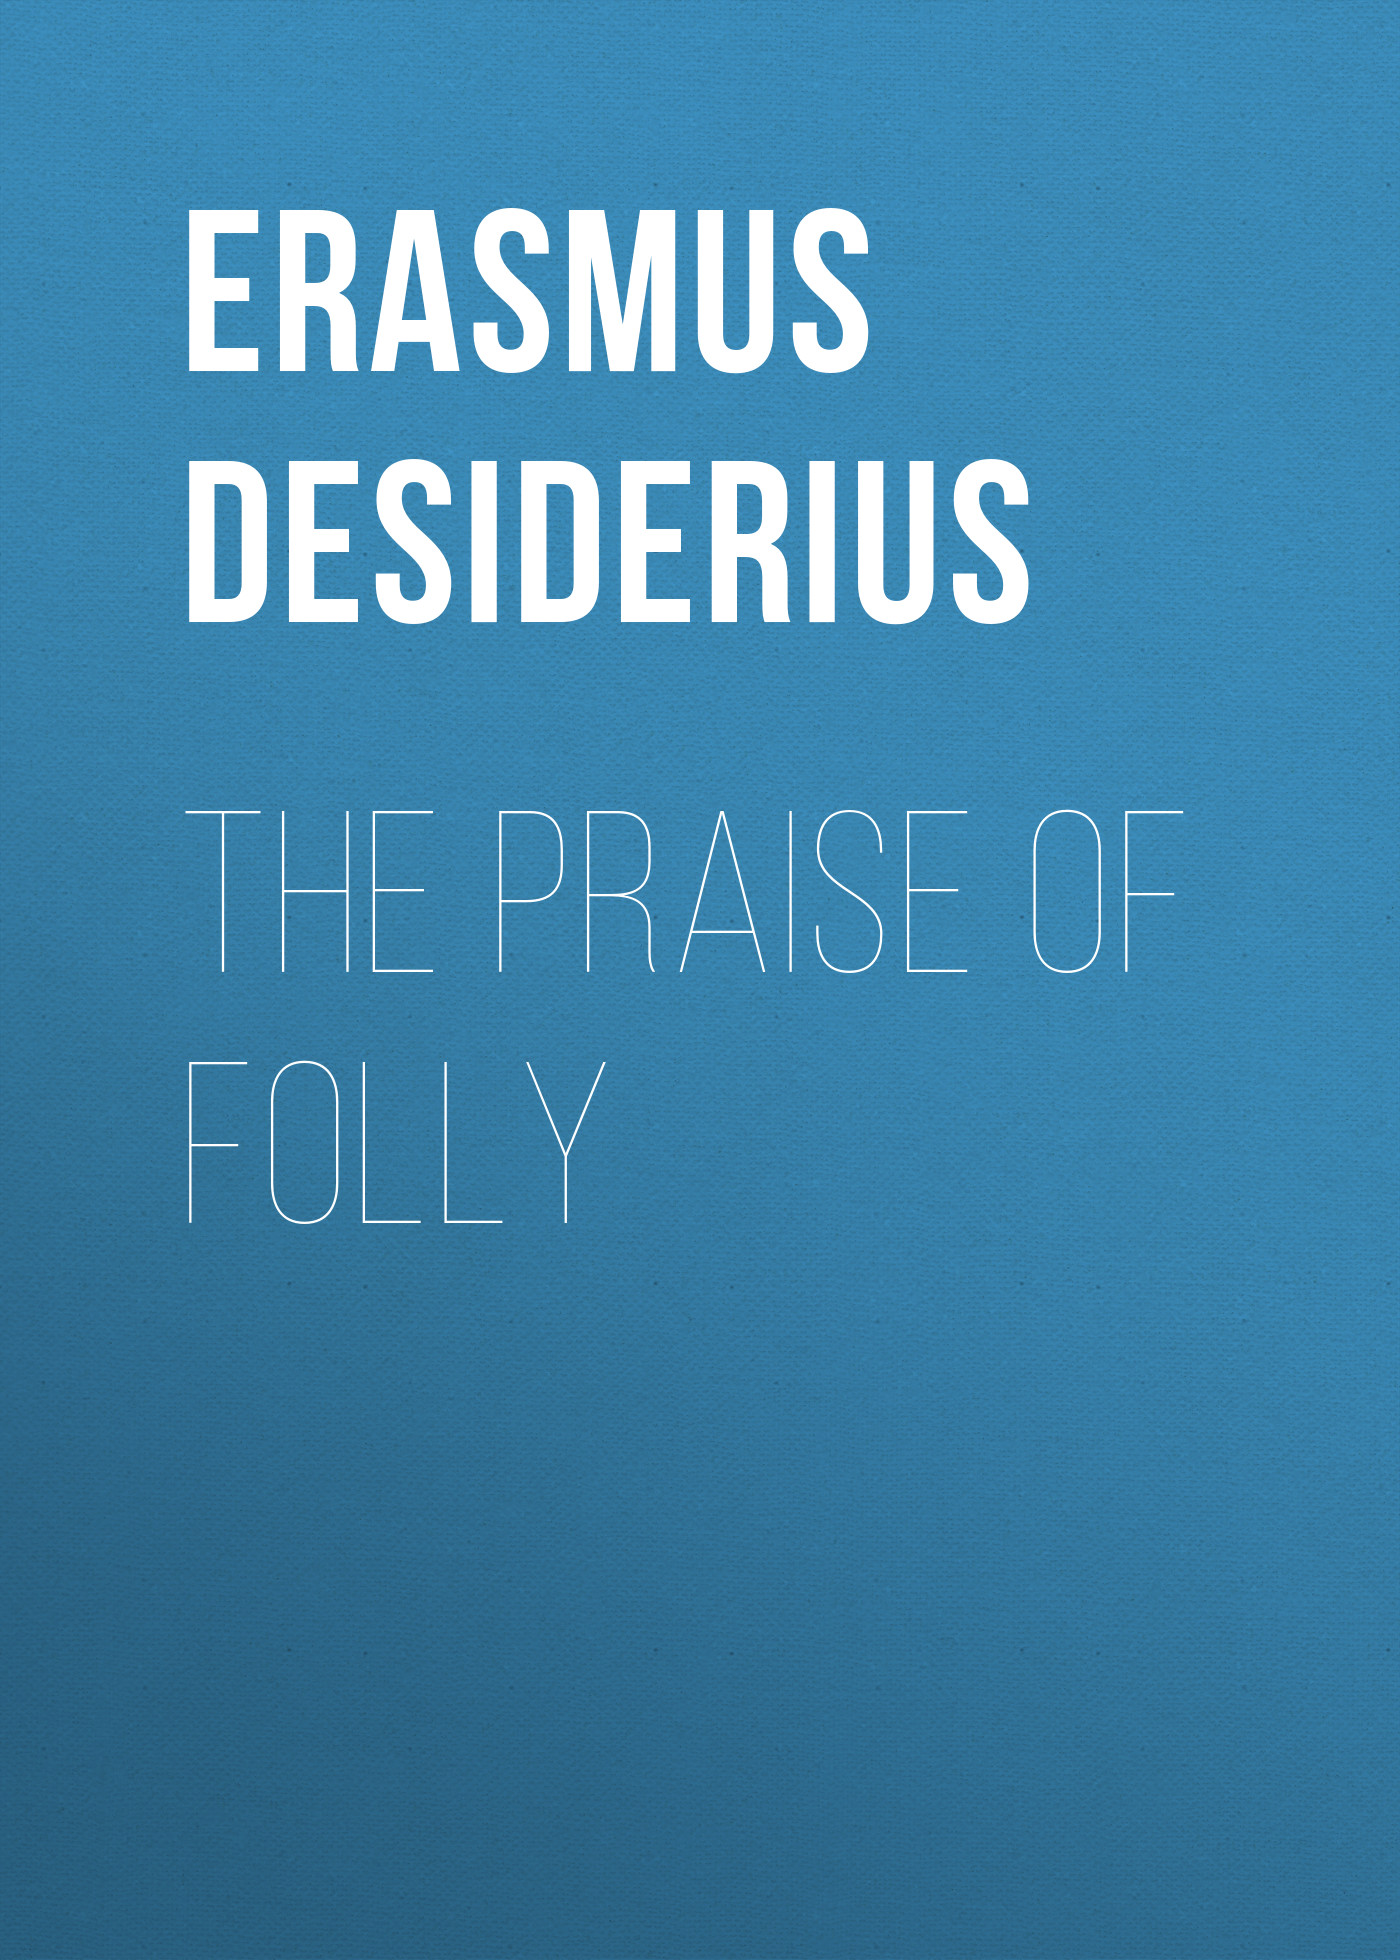 Книга The Praise of Folly из серии , созданная Desiderius Erasmus, может относится к жанру Словари, Религия: прочее, Зарубежная эзотерическая и религиозная литература, Зарубежная старинная литература, Зарубежная классика. Стоимость электронной книги The Praise of Folly с идентификатором 36094845 составляет 0 руб.